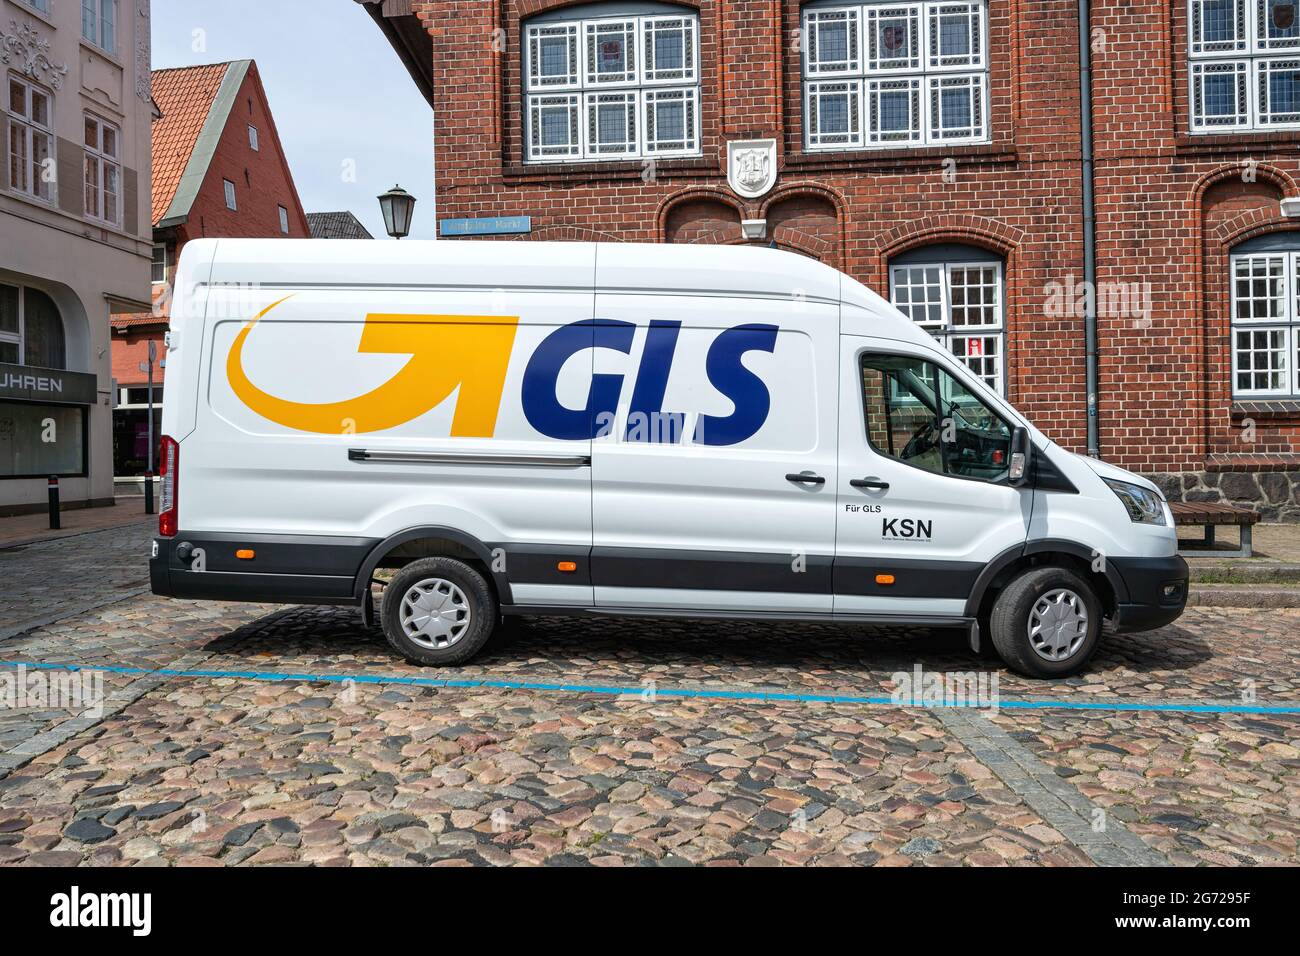 Livraison GLS van. General Logistics Systems B.V. a été fondée en 1999 et est une filiale de la poste britannique Royal Mail. Banque D'Images